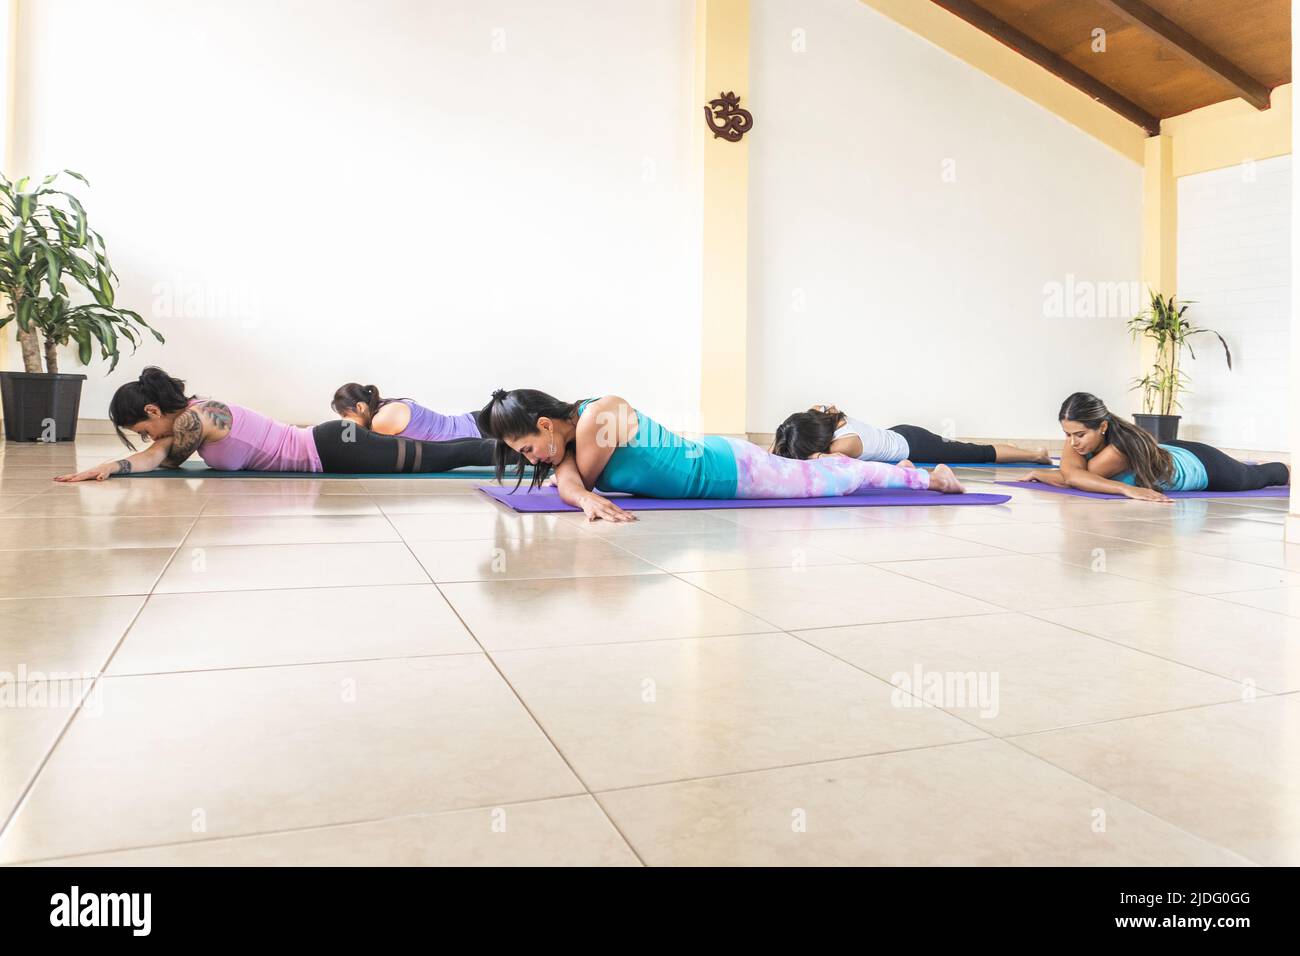 le donne che praticano lo yoga e il relax sono a faccia in giù nello studio Foto Stock